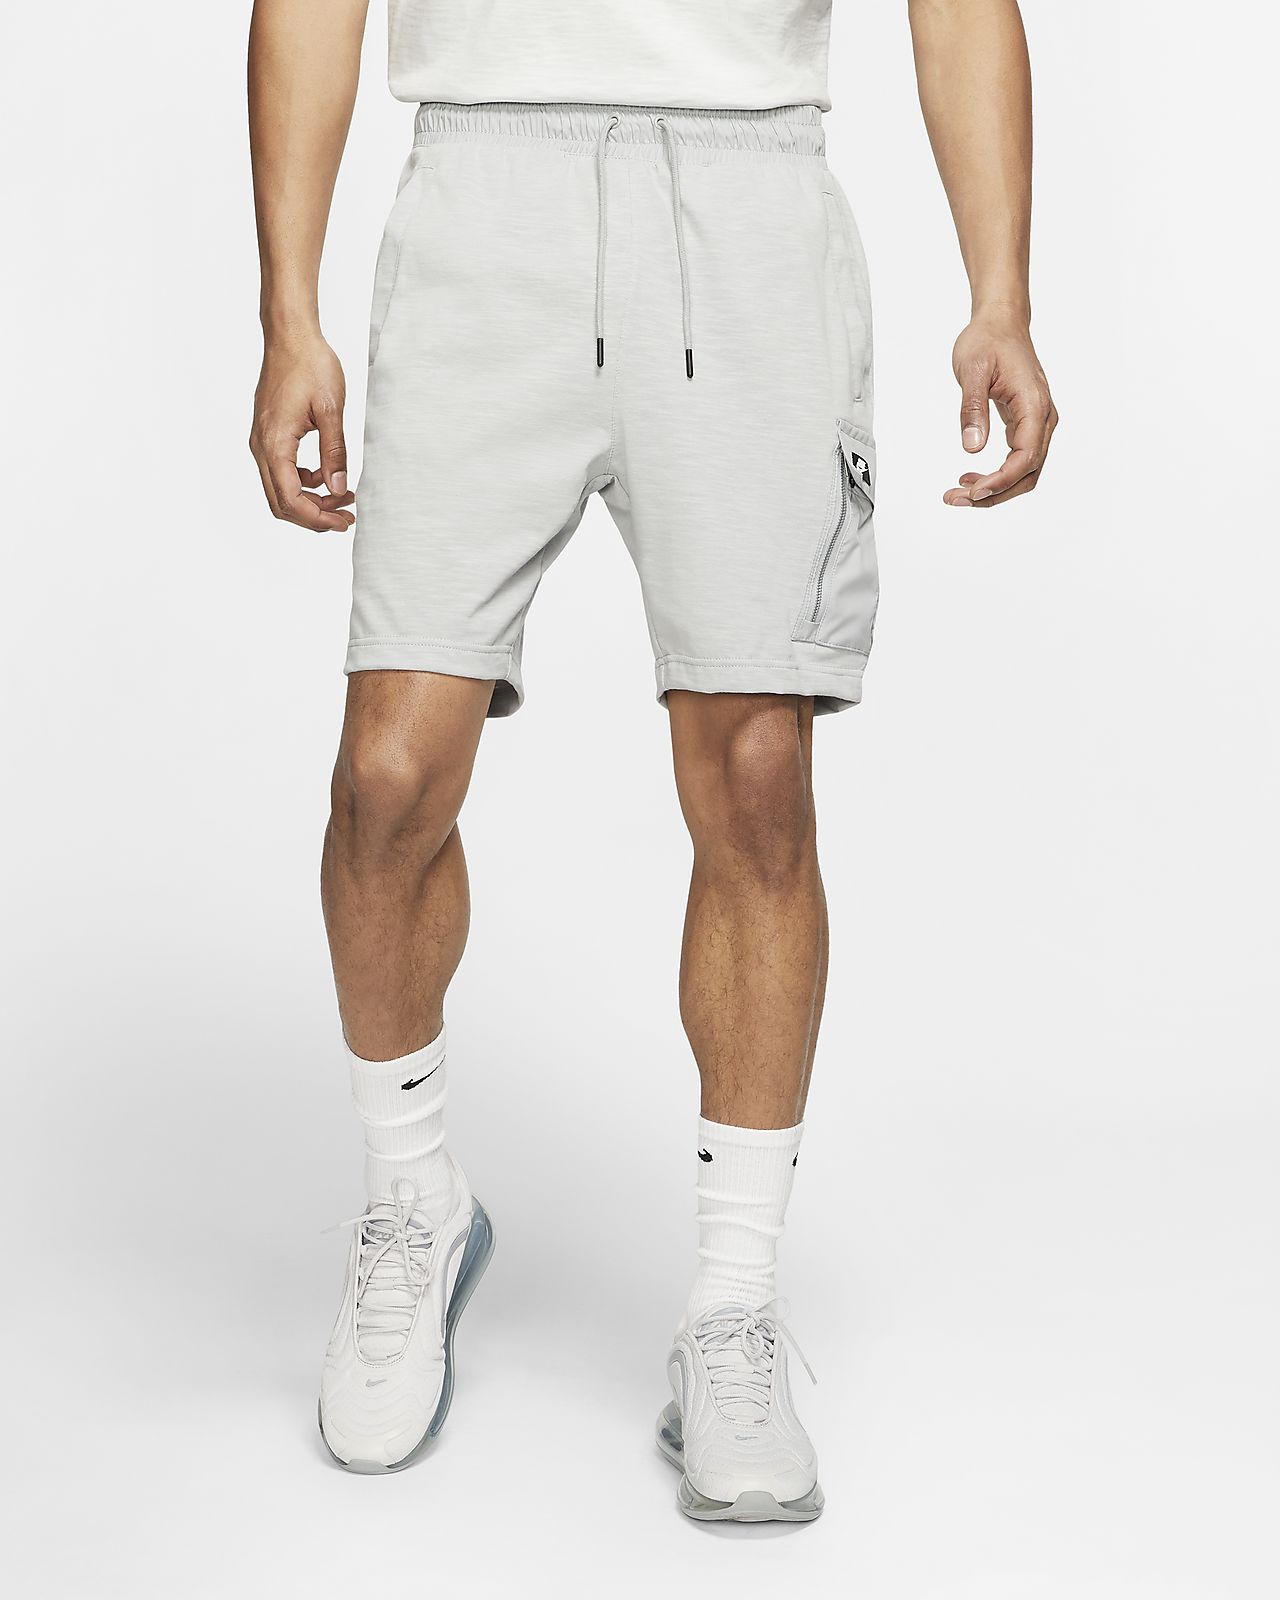 Nike Sportswear Men's Shorts. Nike HR